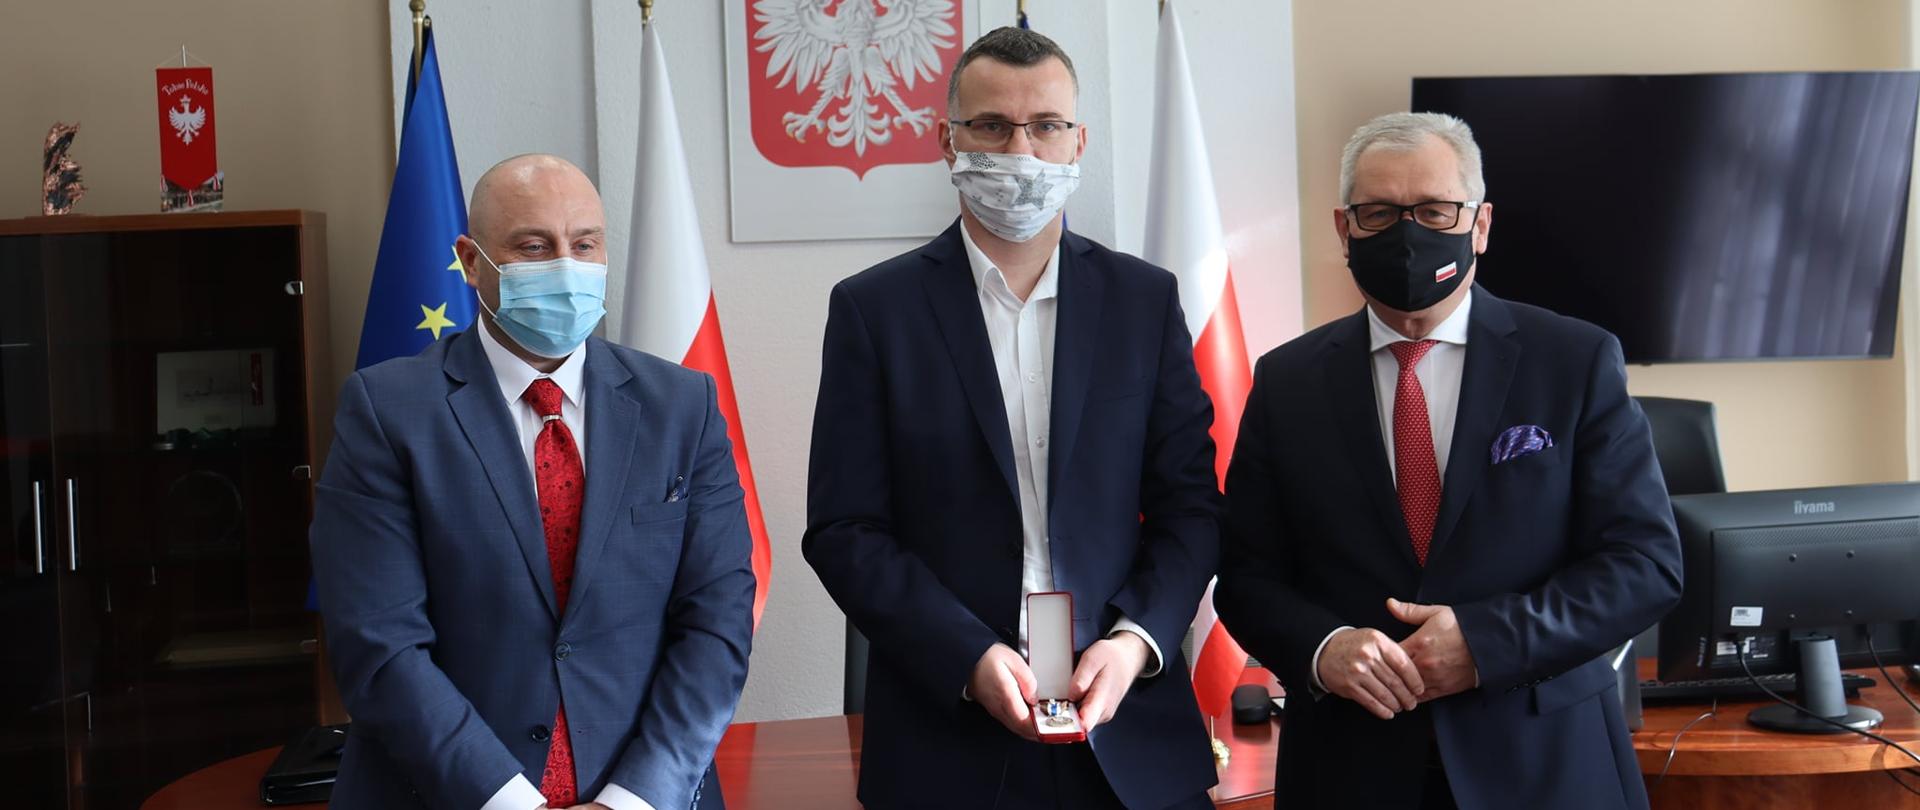 Tomasz Krzyszczuk, z-ca dyrektora Wydziału Finansów OUW uhonorowany odznaką Ministra Finansów.